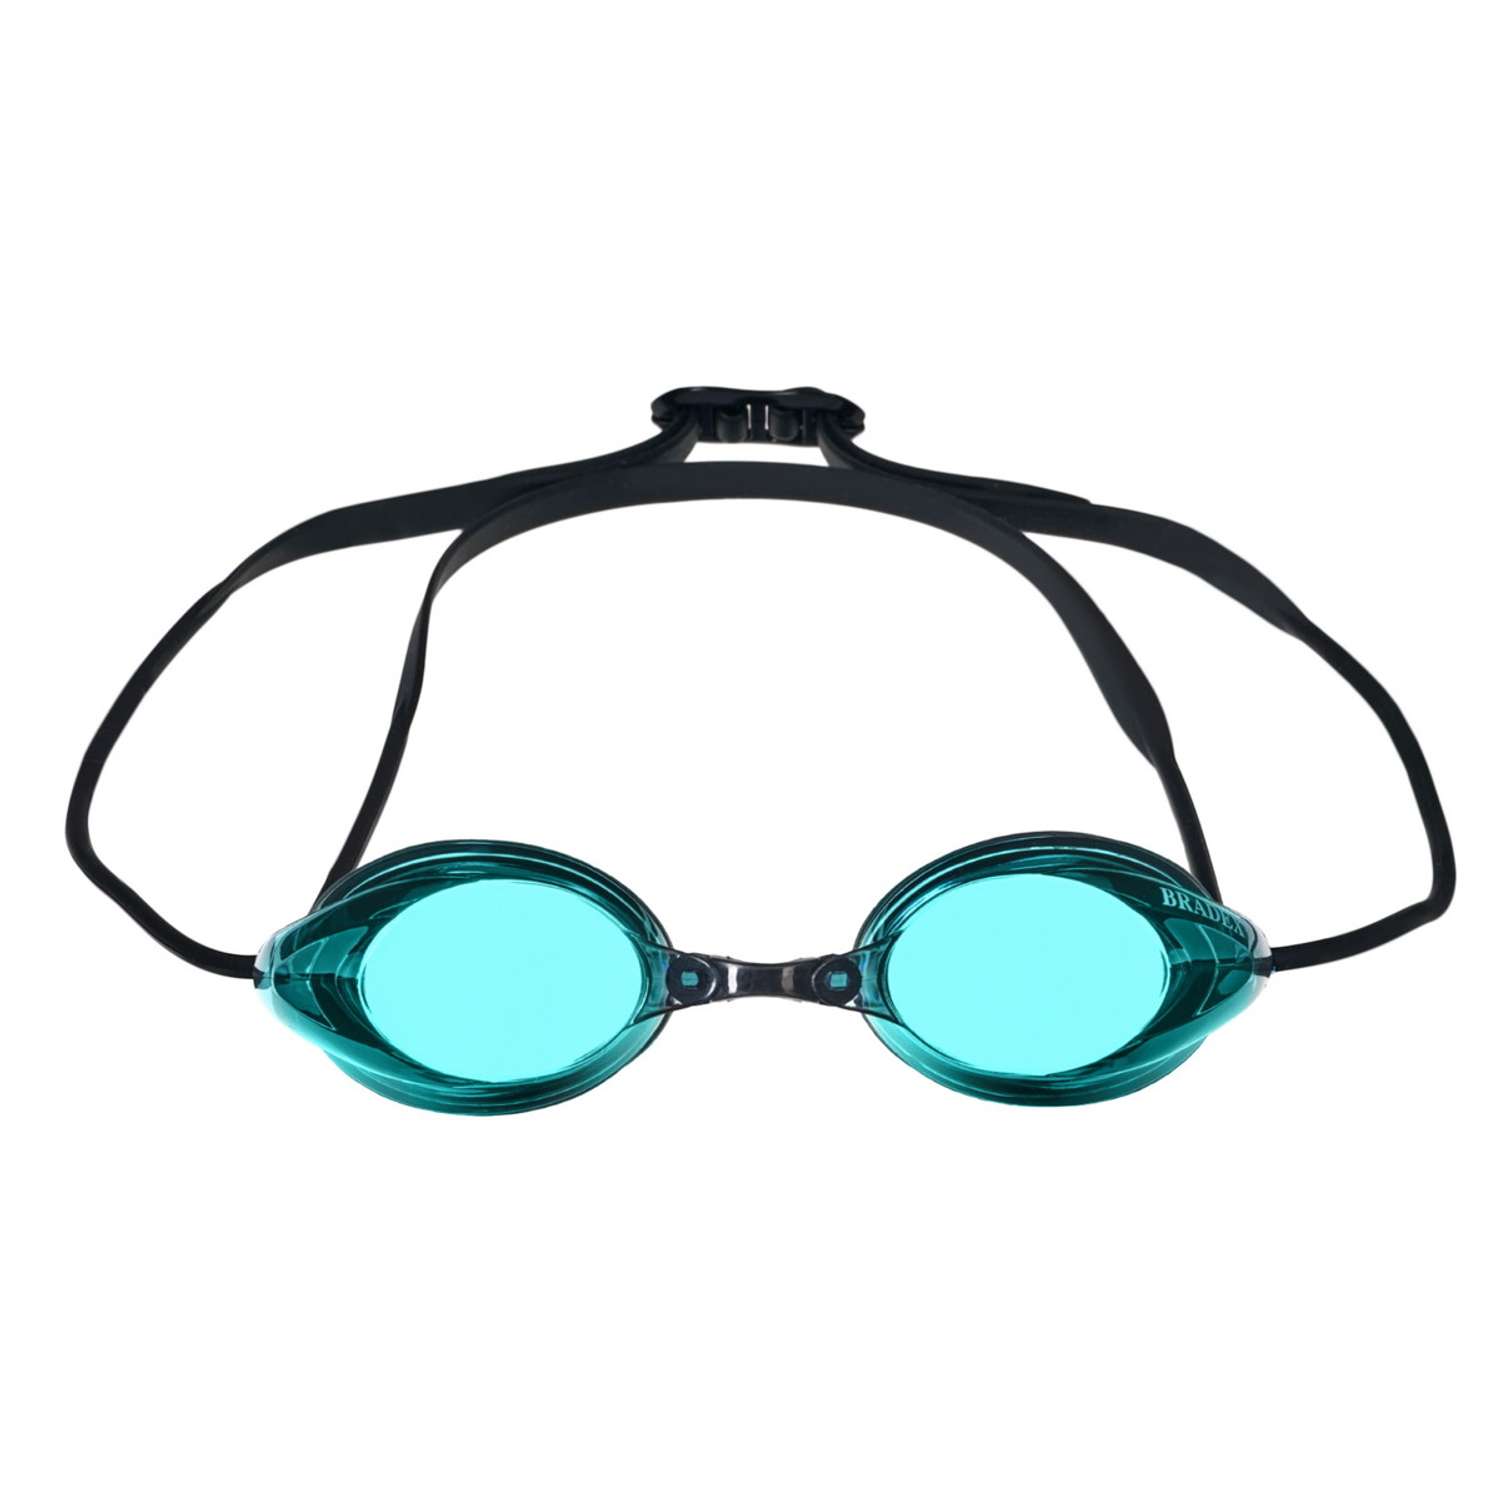 Очки для плавания Bradex серия Спорт черные c голубыми линзами - фото 11